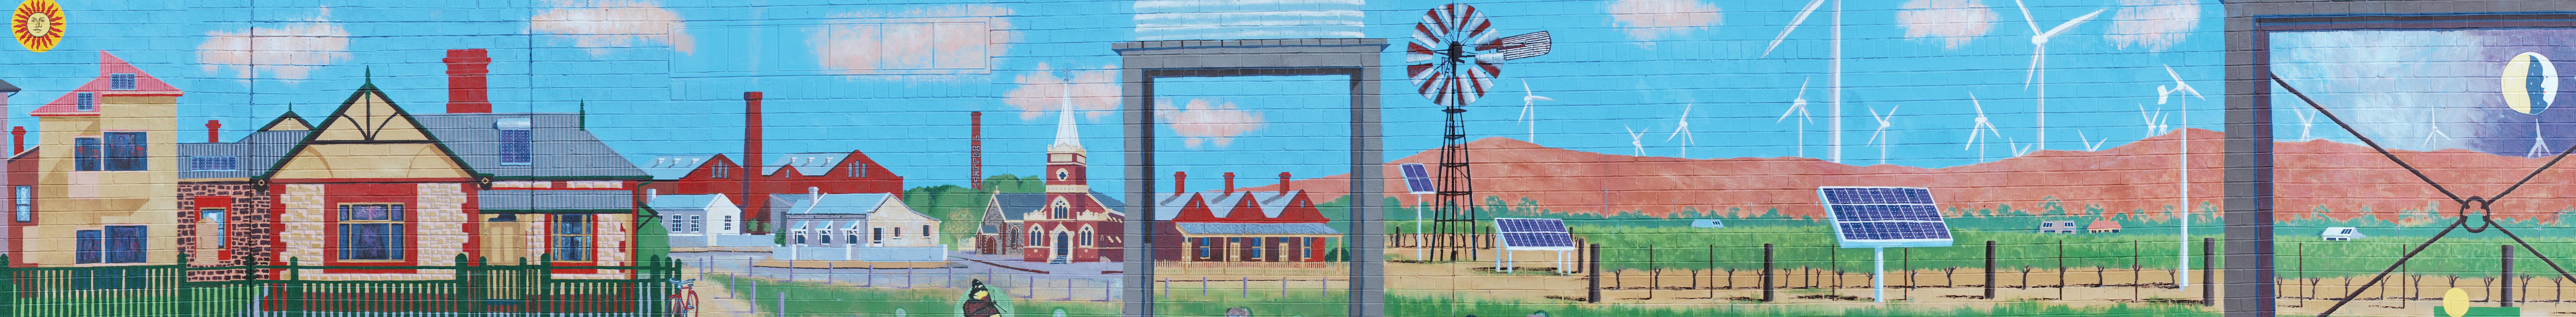 Ashley Street Torrensville mural